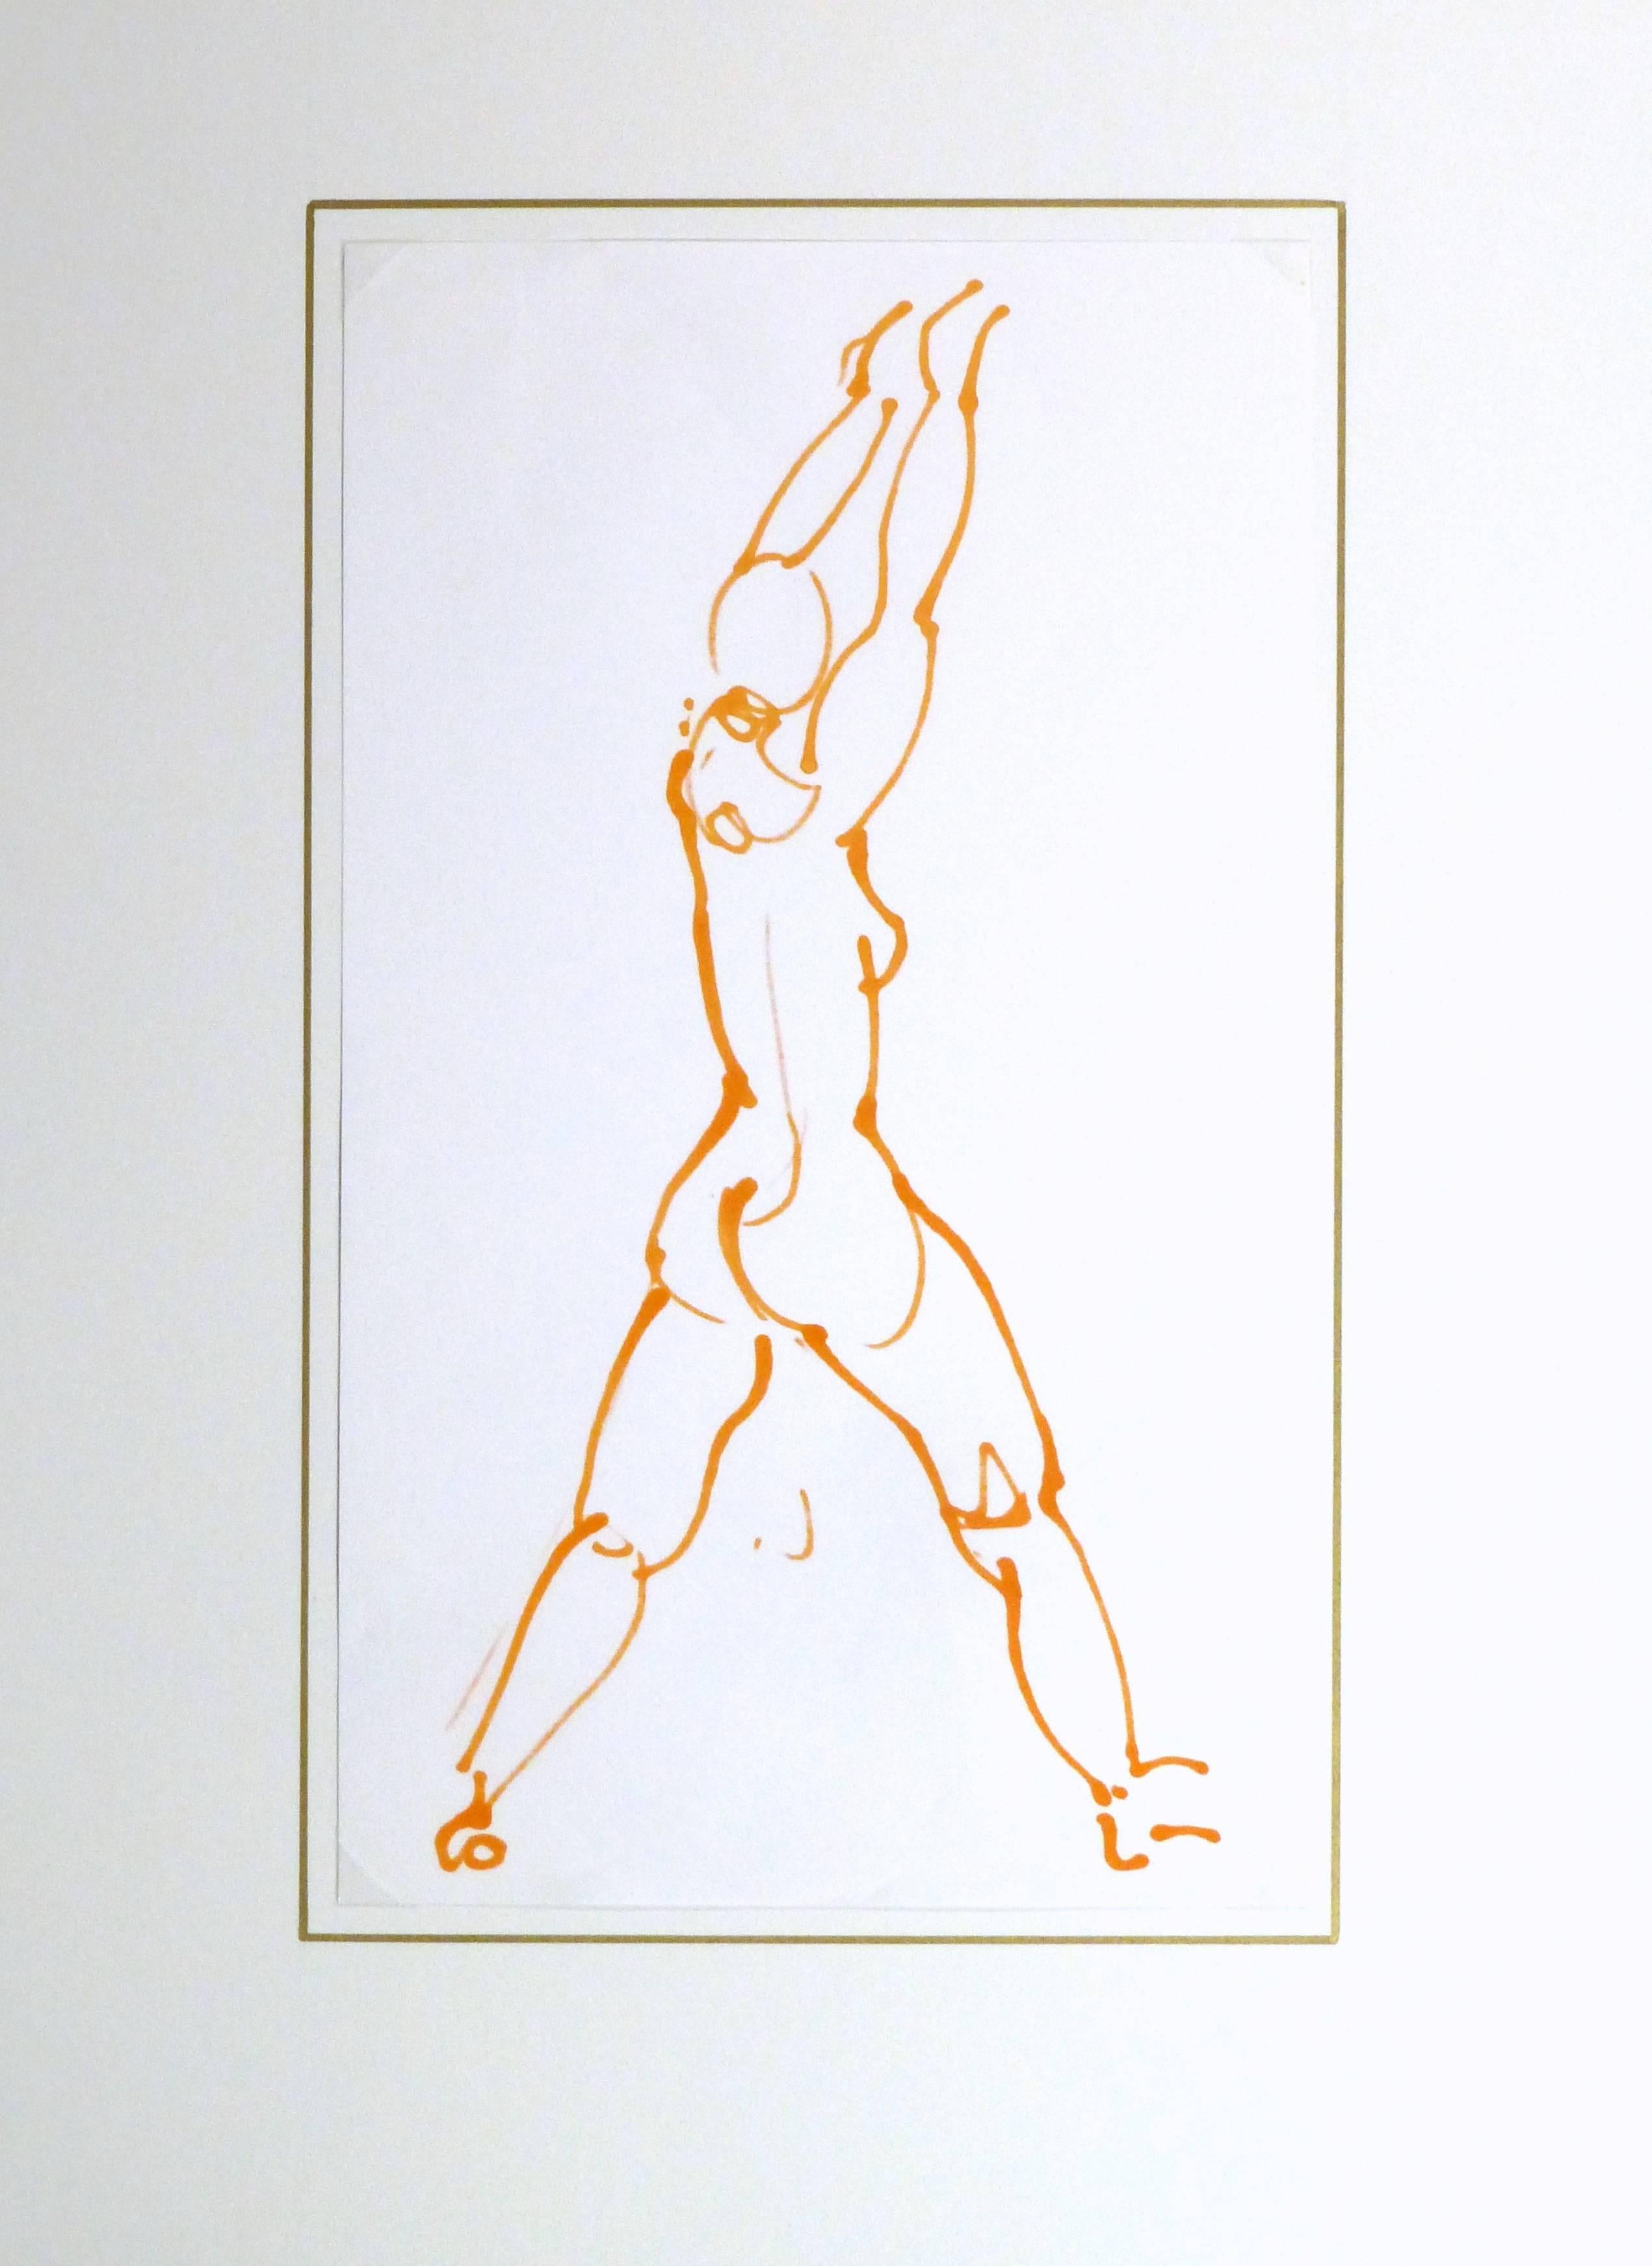 Französische Tuscheskizze eines stehenden und sich reckenden weiblichen Aktes in leuchtendem Orange des französisch-japanischen Künstlers Kei Mitsuuchi (1948-2001), um 1990

Originalkunstwerk auf Papier auf einem weißen Passepartout mit Goldrand.